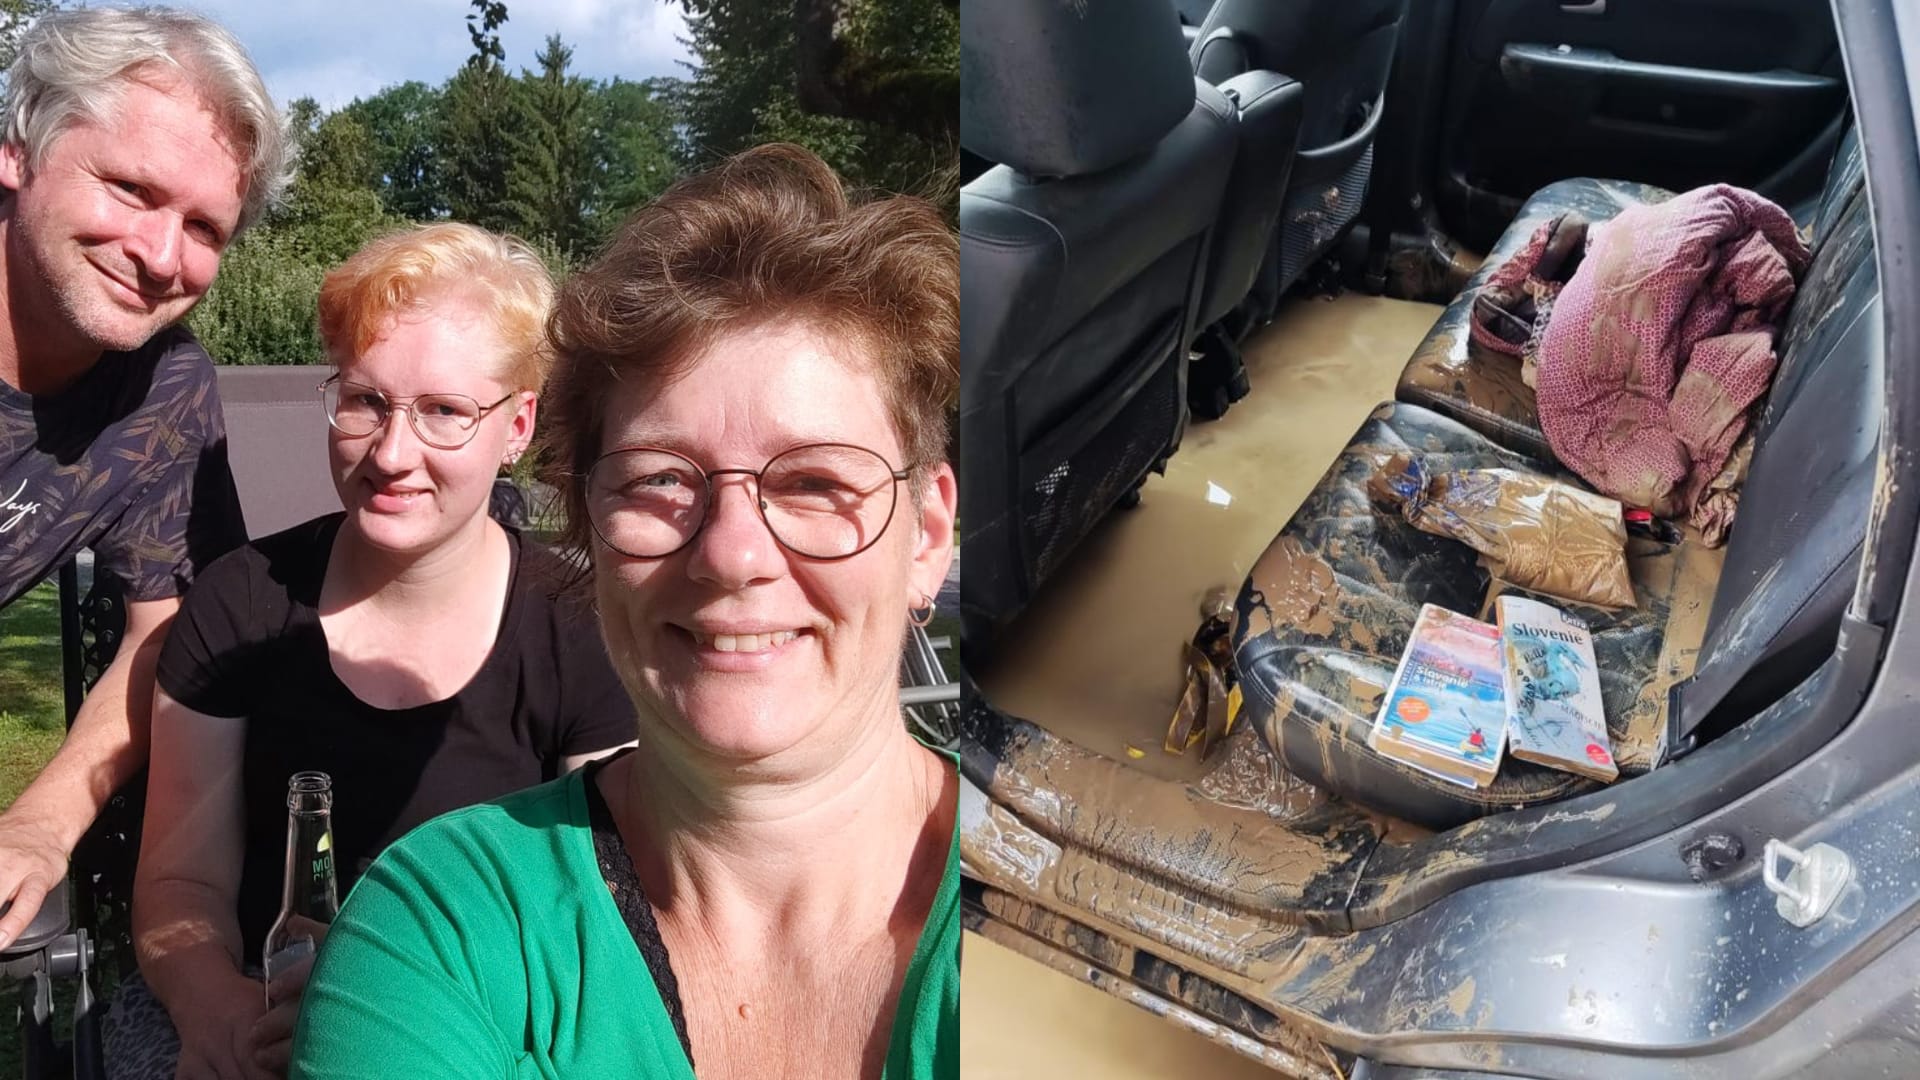 Erika's vakantie in Slovenië viel in het water door noodweer: 'Er was geen tijd om te vluchten'